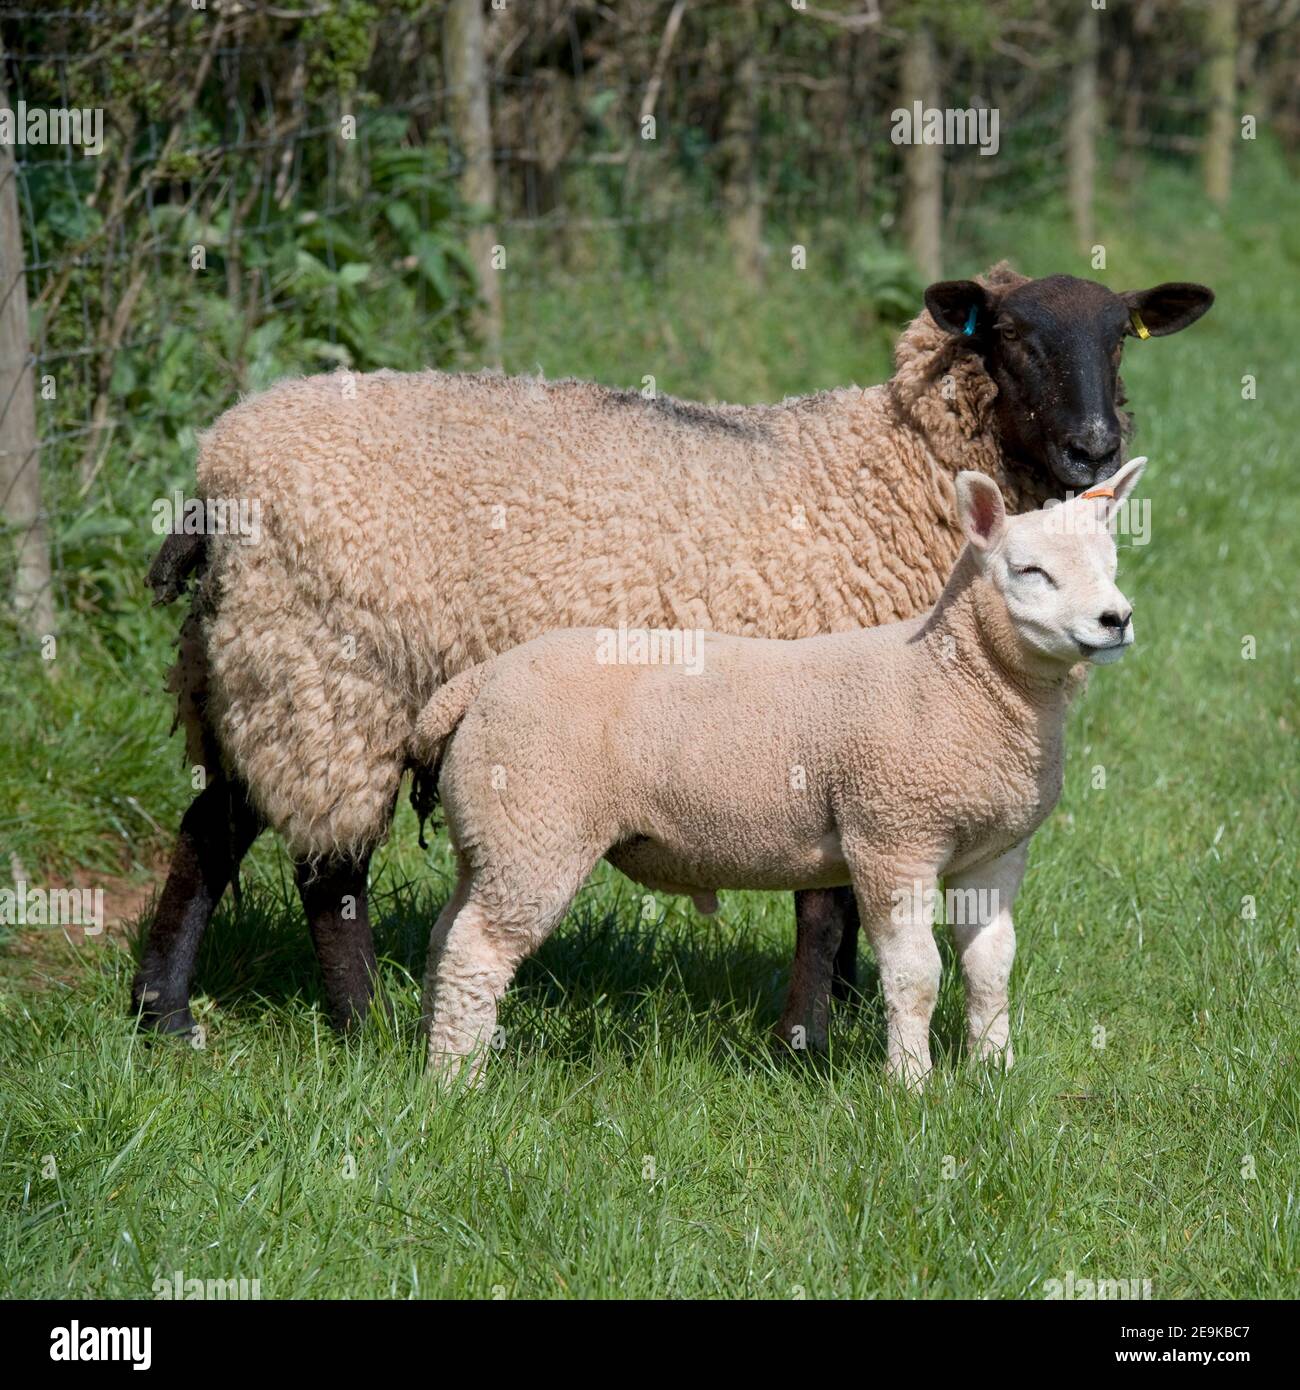 sheep and a lamb Stock Photo